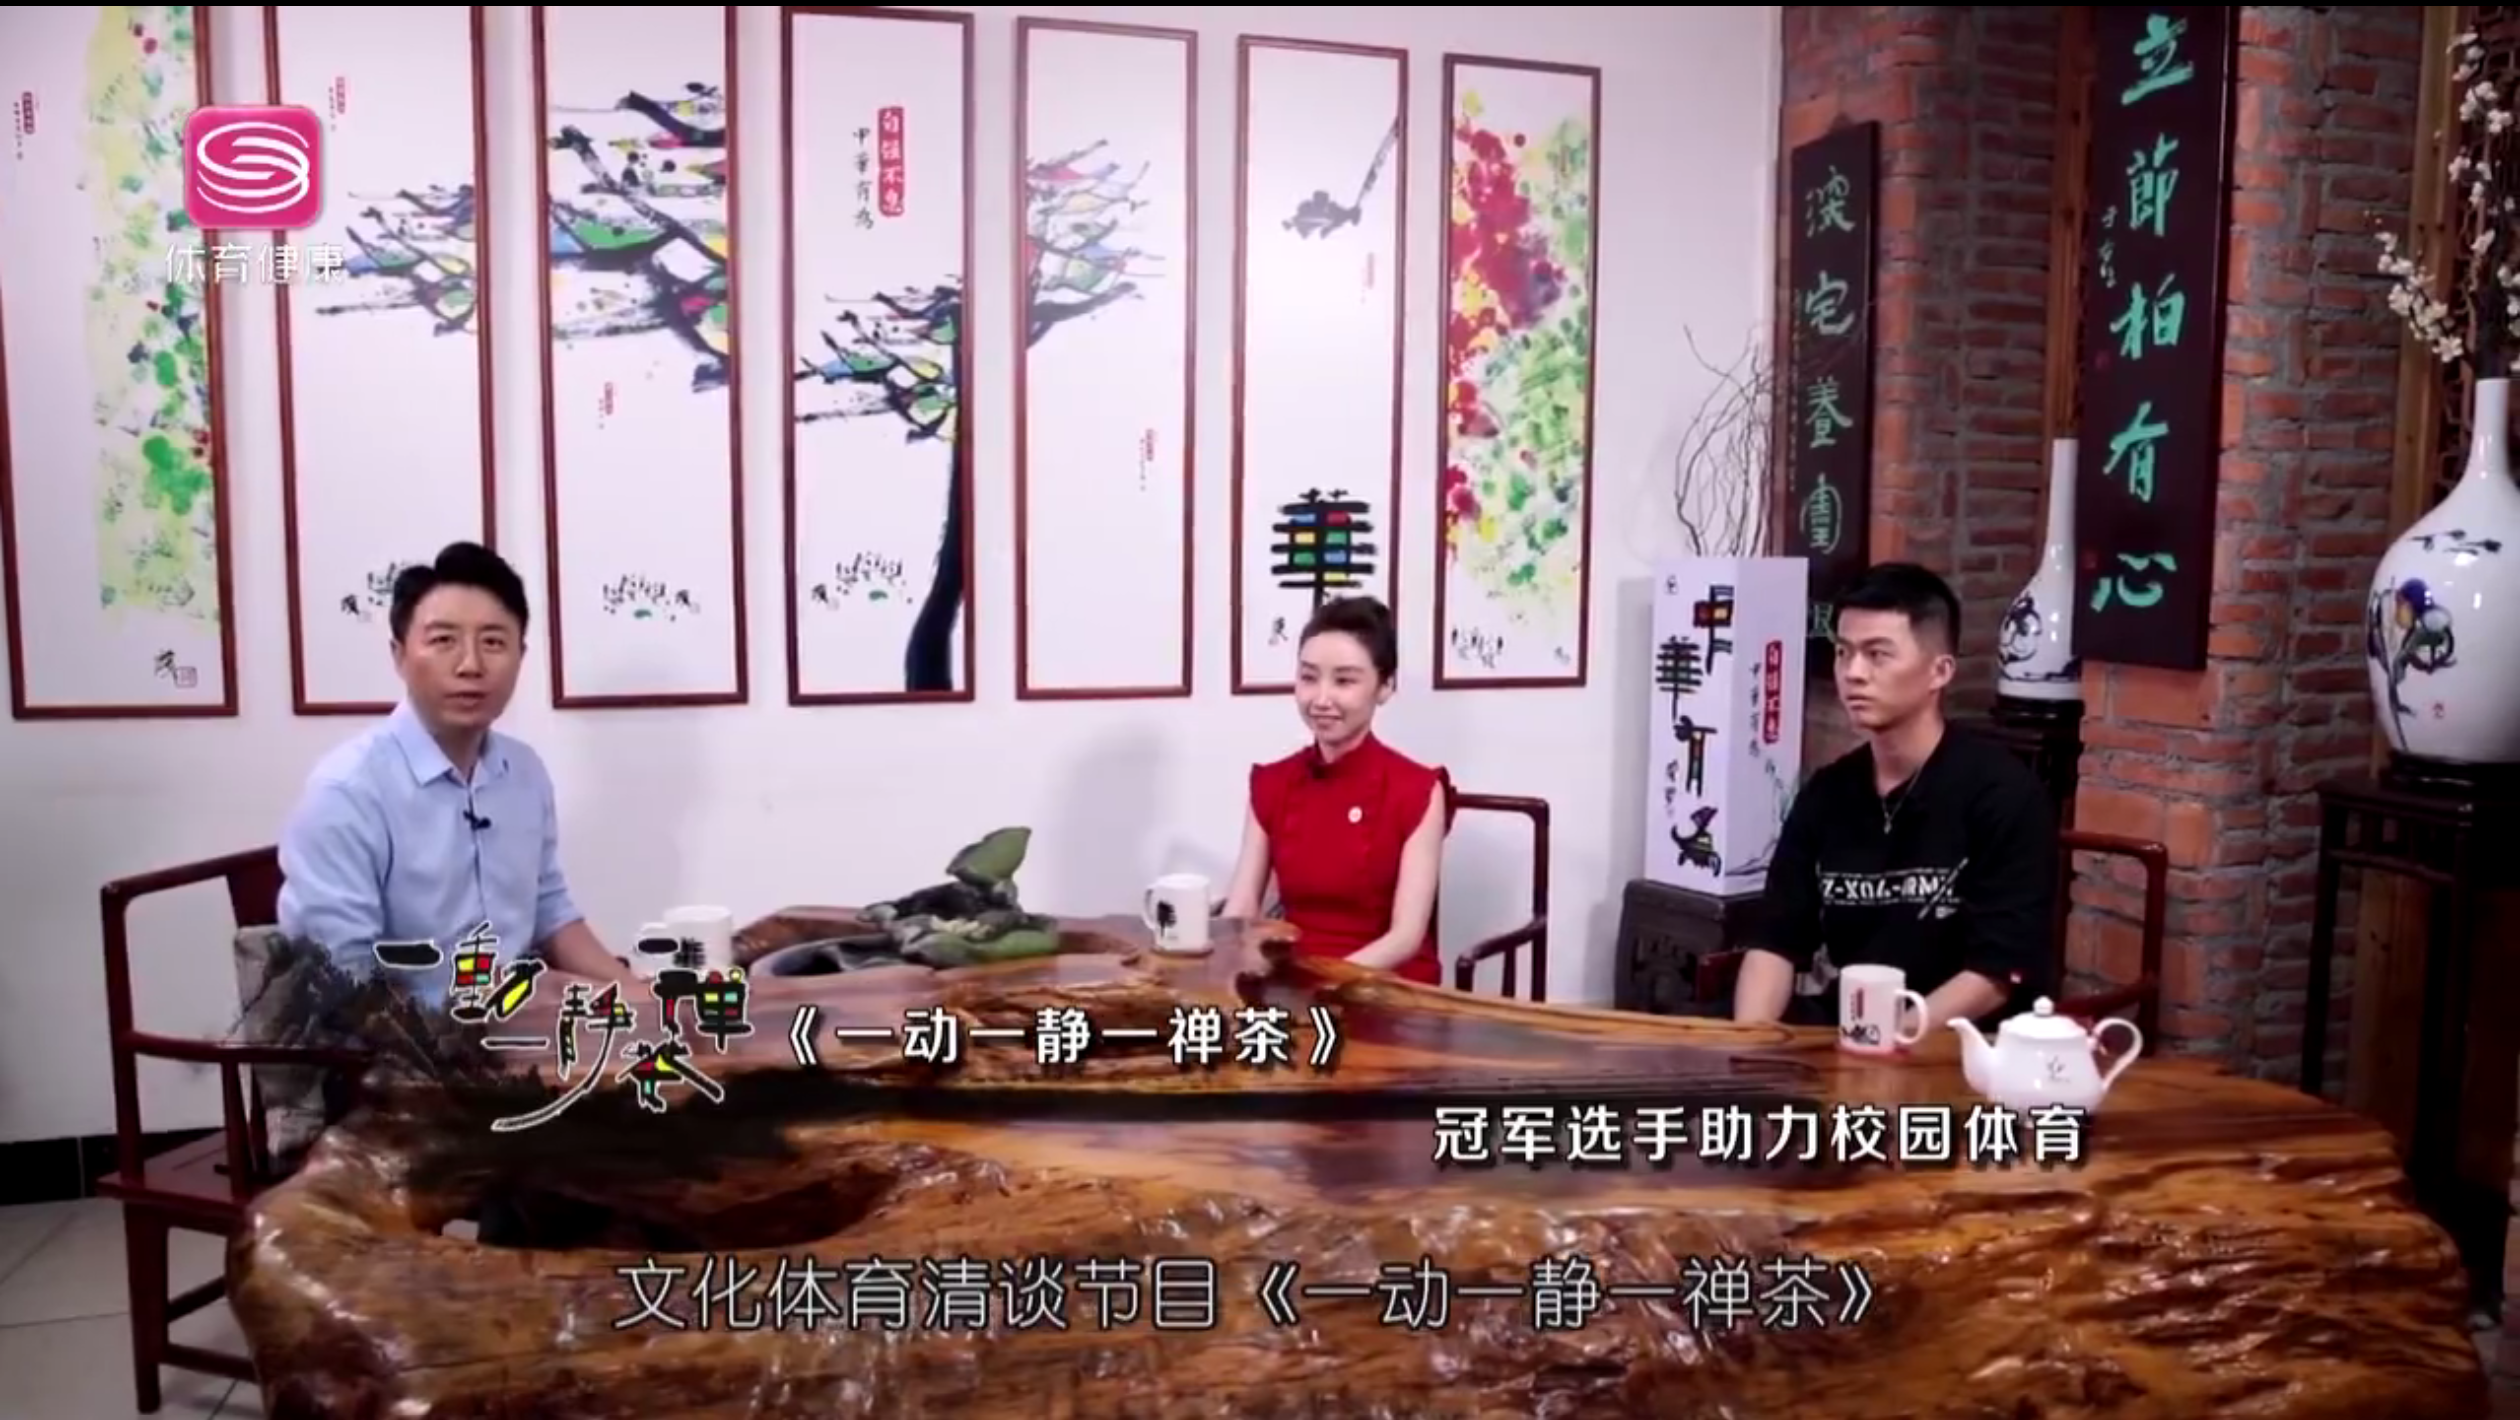 赖莎老师做客深圳体育健康频道《一动一静一禅茶》栏目